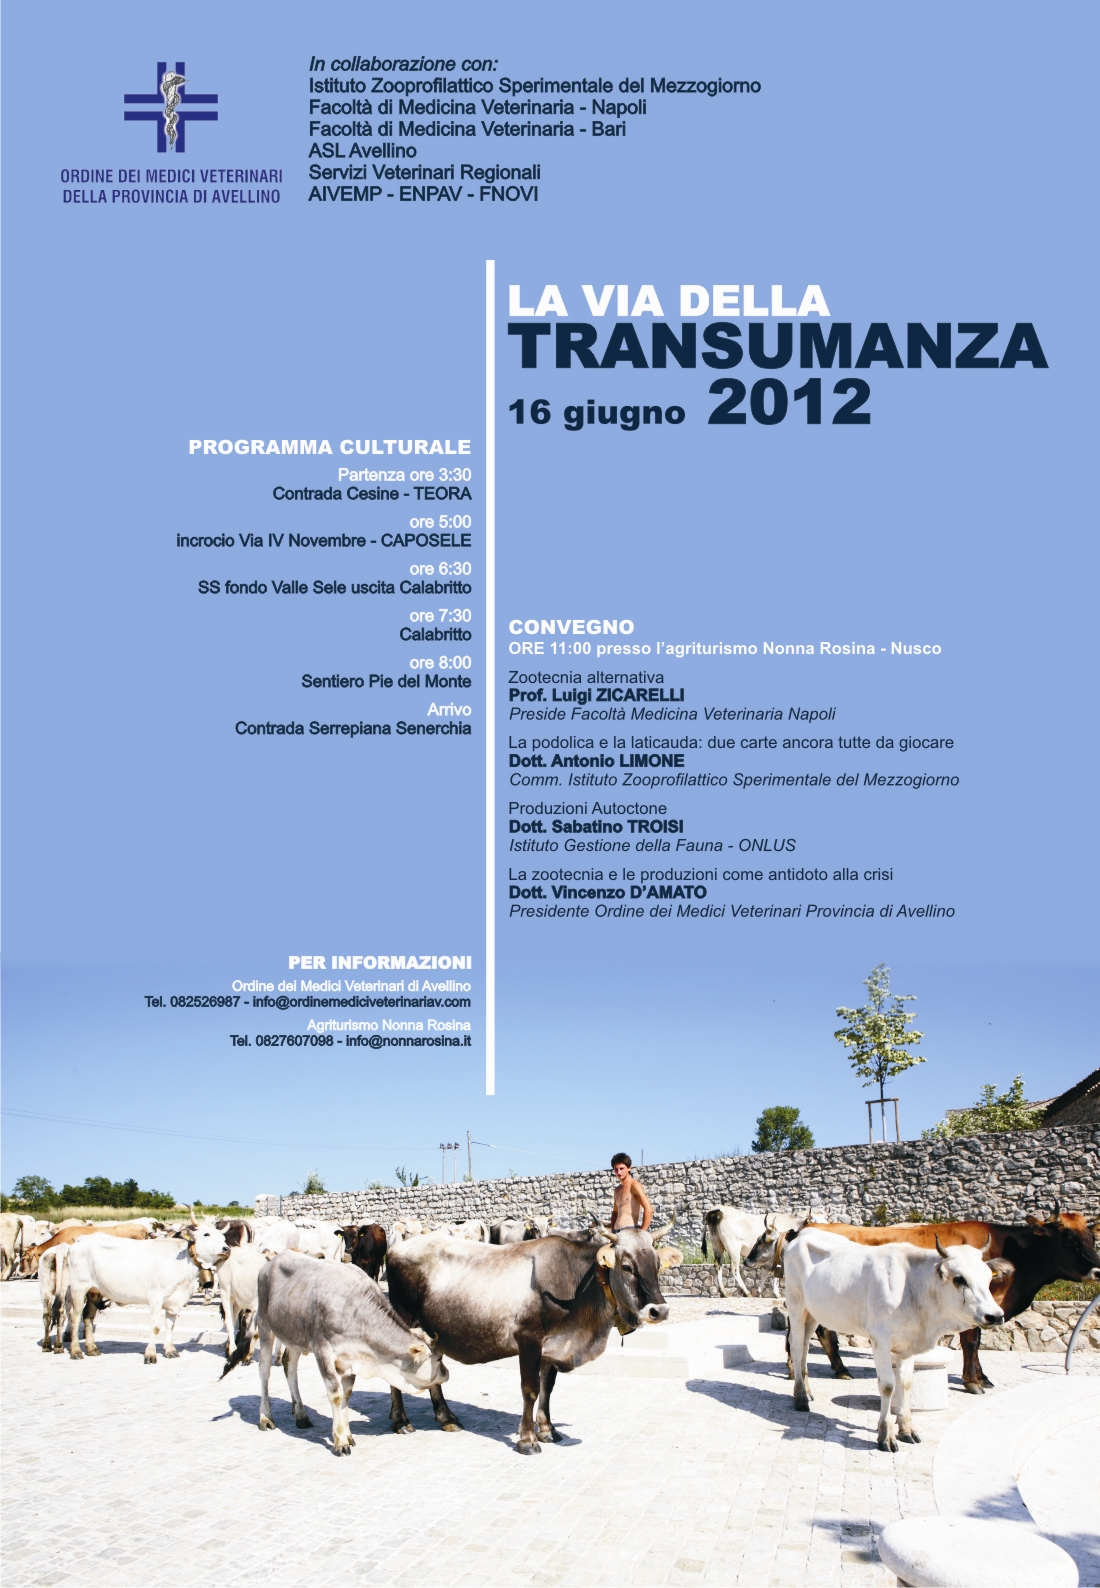 Transumanza 2012